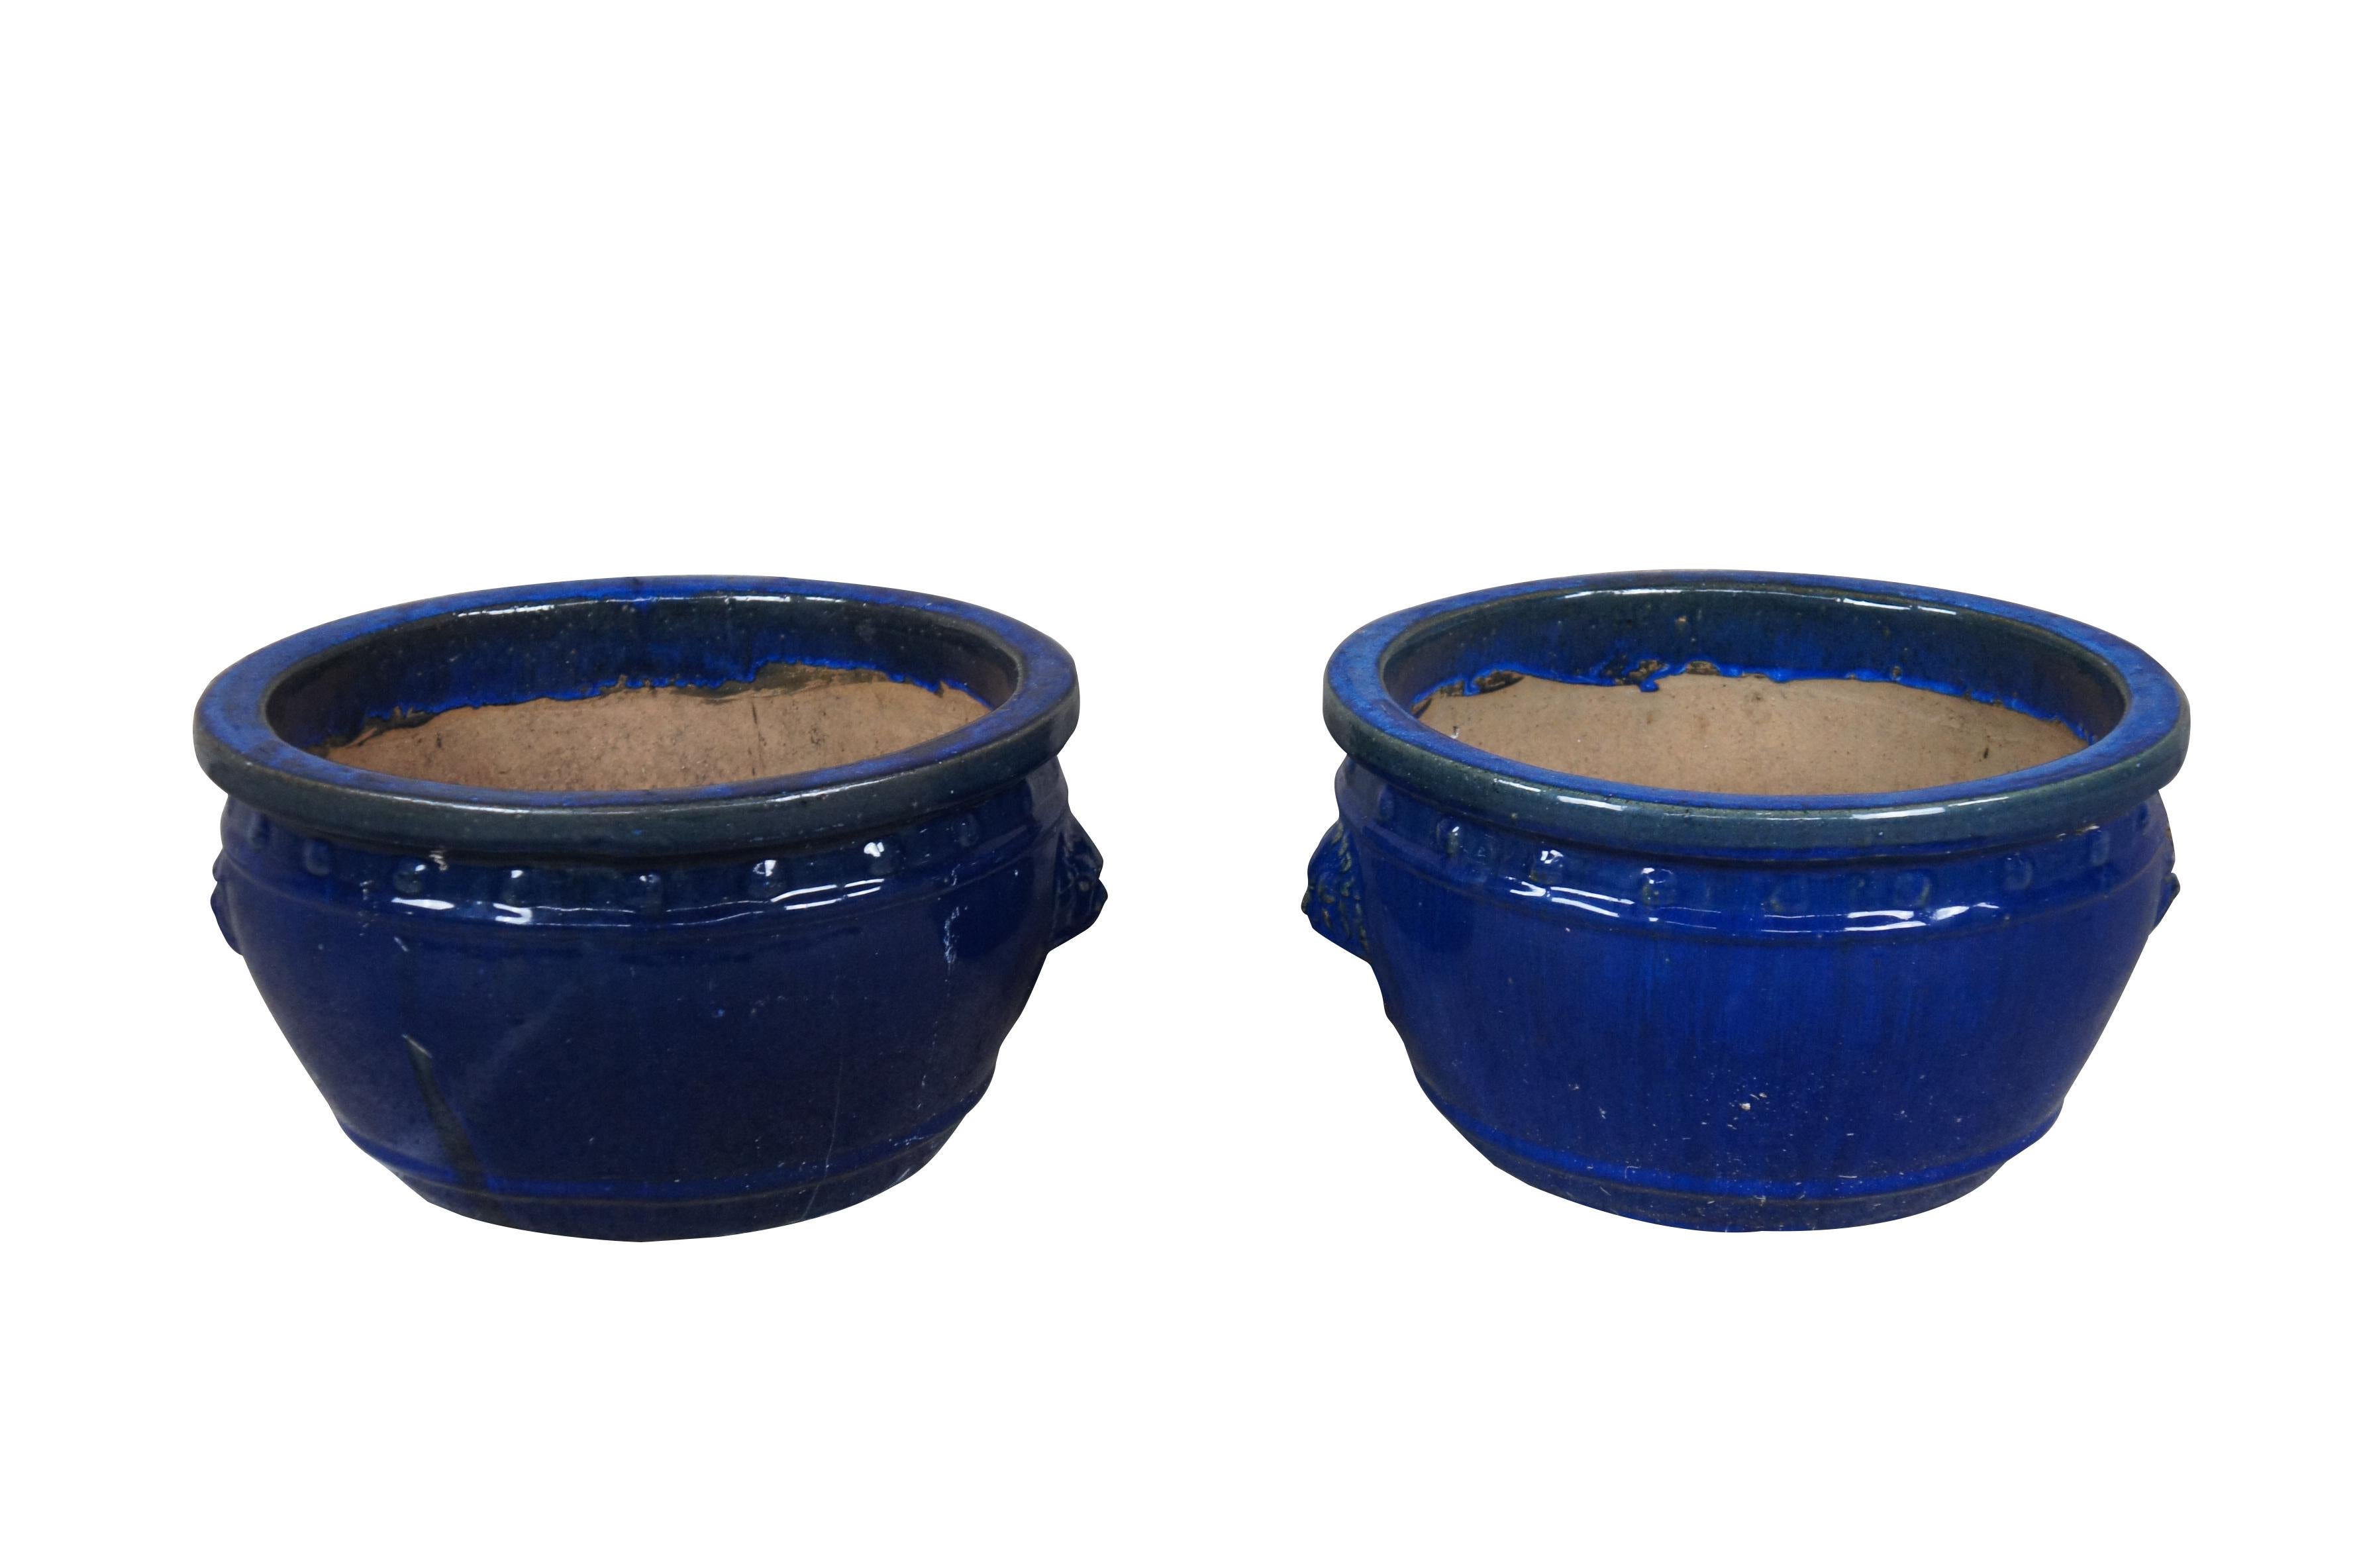 2 handgefertigte blaue Keramik-Urnen.  Blau glasiert mit Löwenköpfen und Klopfern.  Mit erhabenen Punkten unter dem oberen Rand und einem Tropfloch im Boden.

Abmessungen:
16 